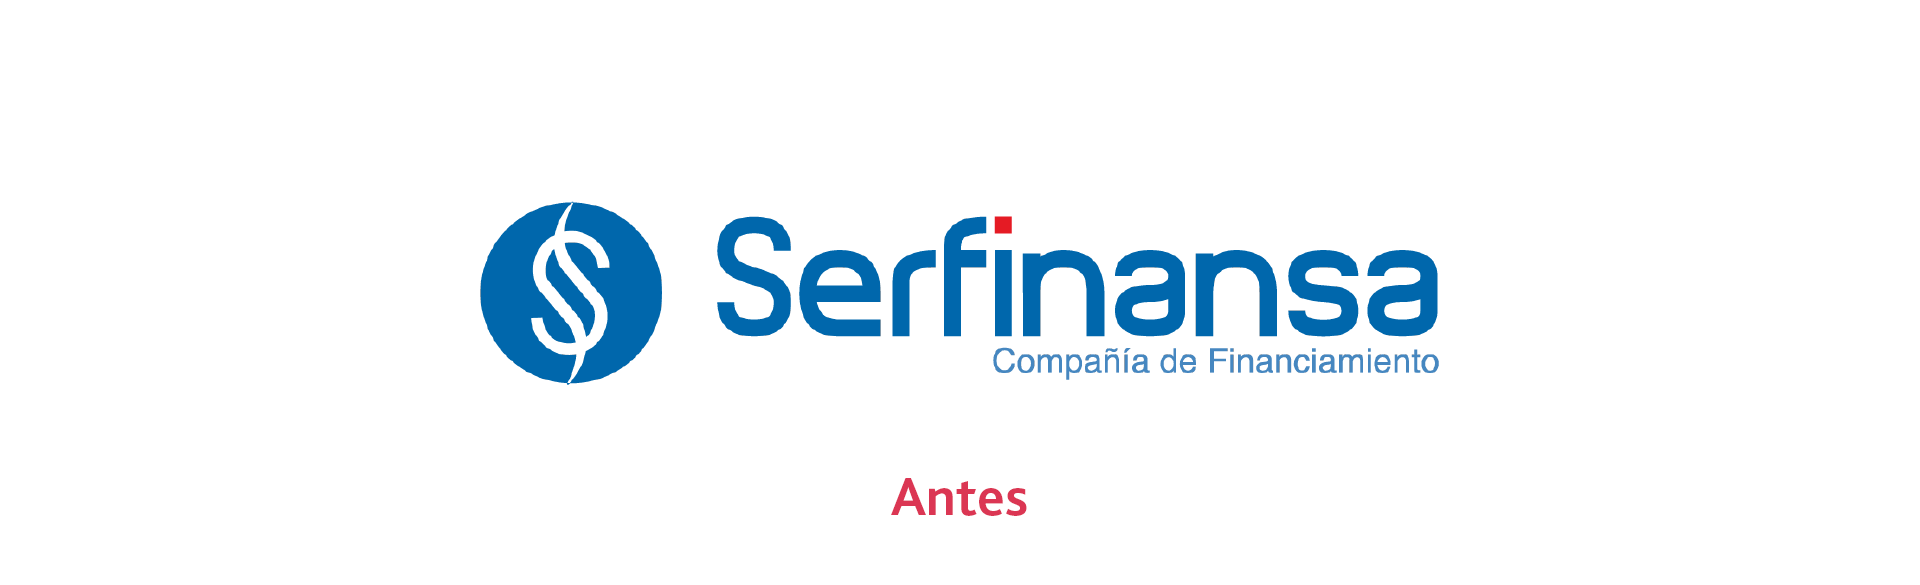 Muestra del anterior logo corporativo de Ser Finanza